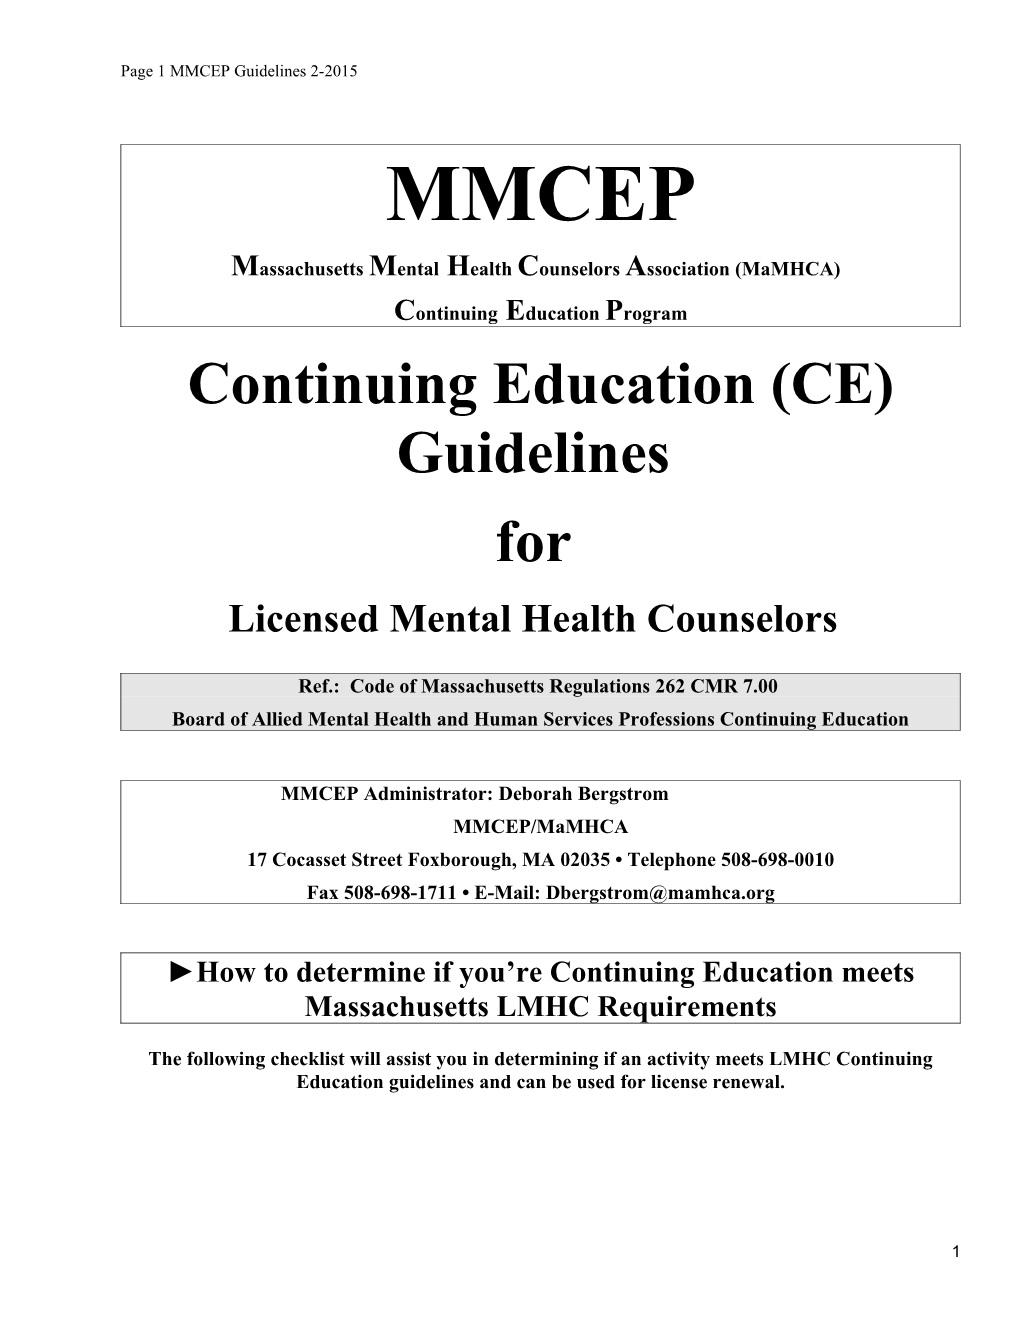 Massachusetts Mental Health Counselors Association (Mamhca)